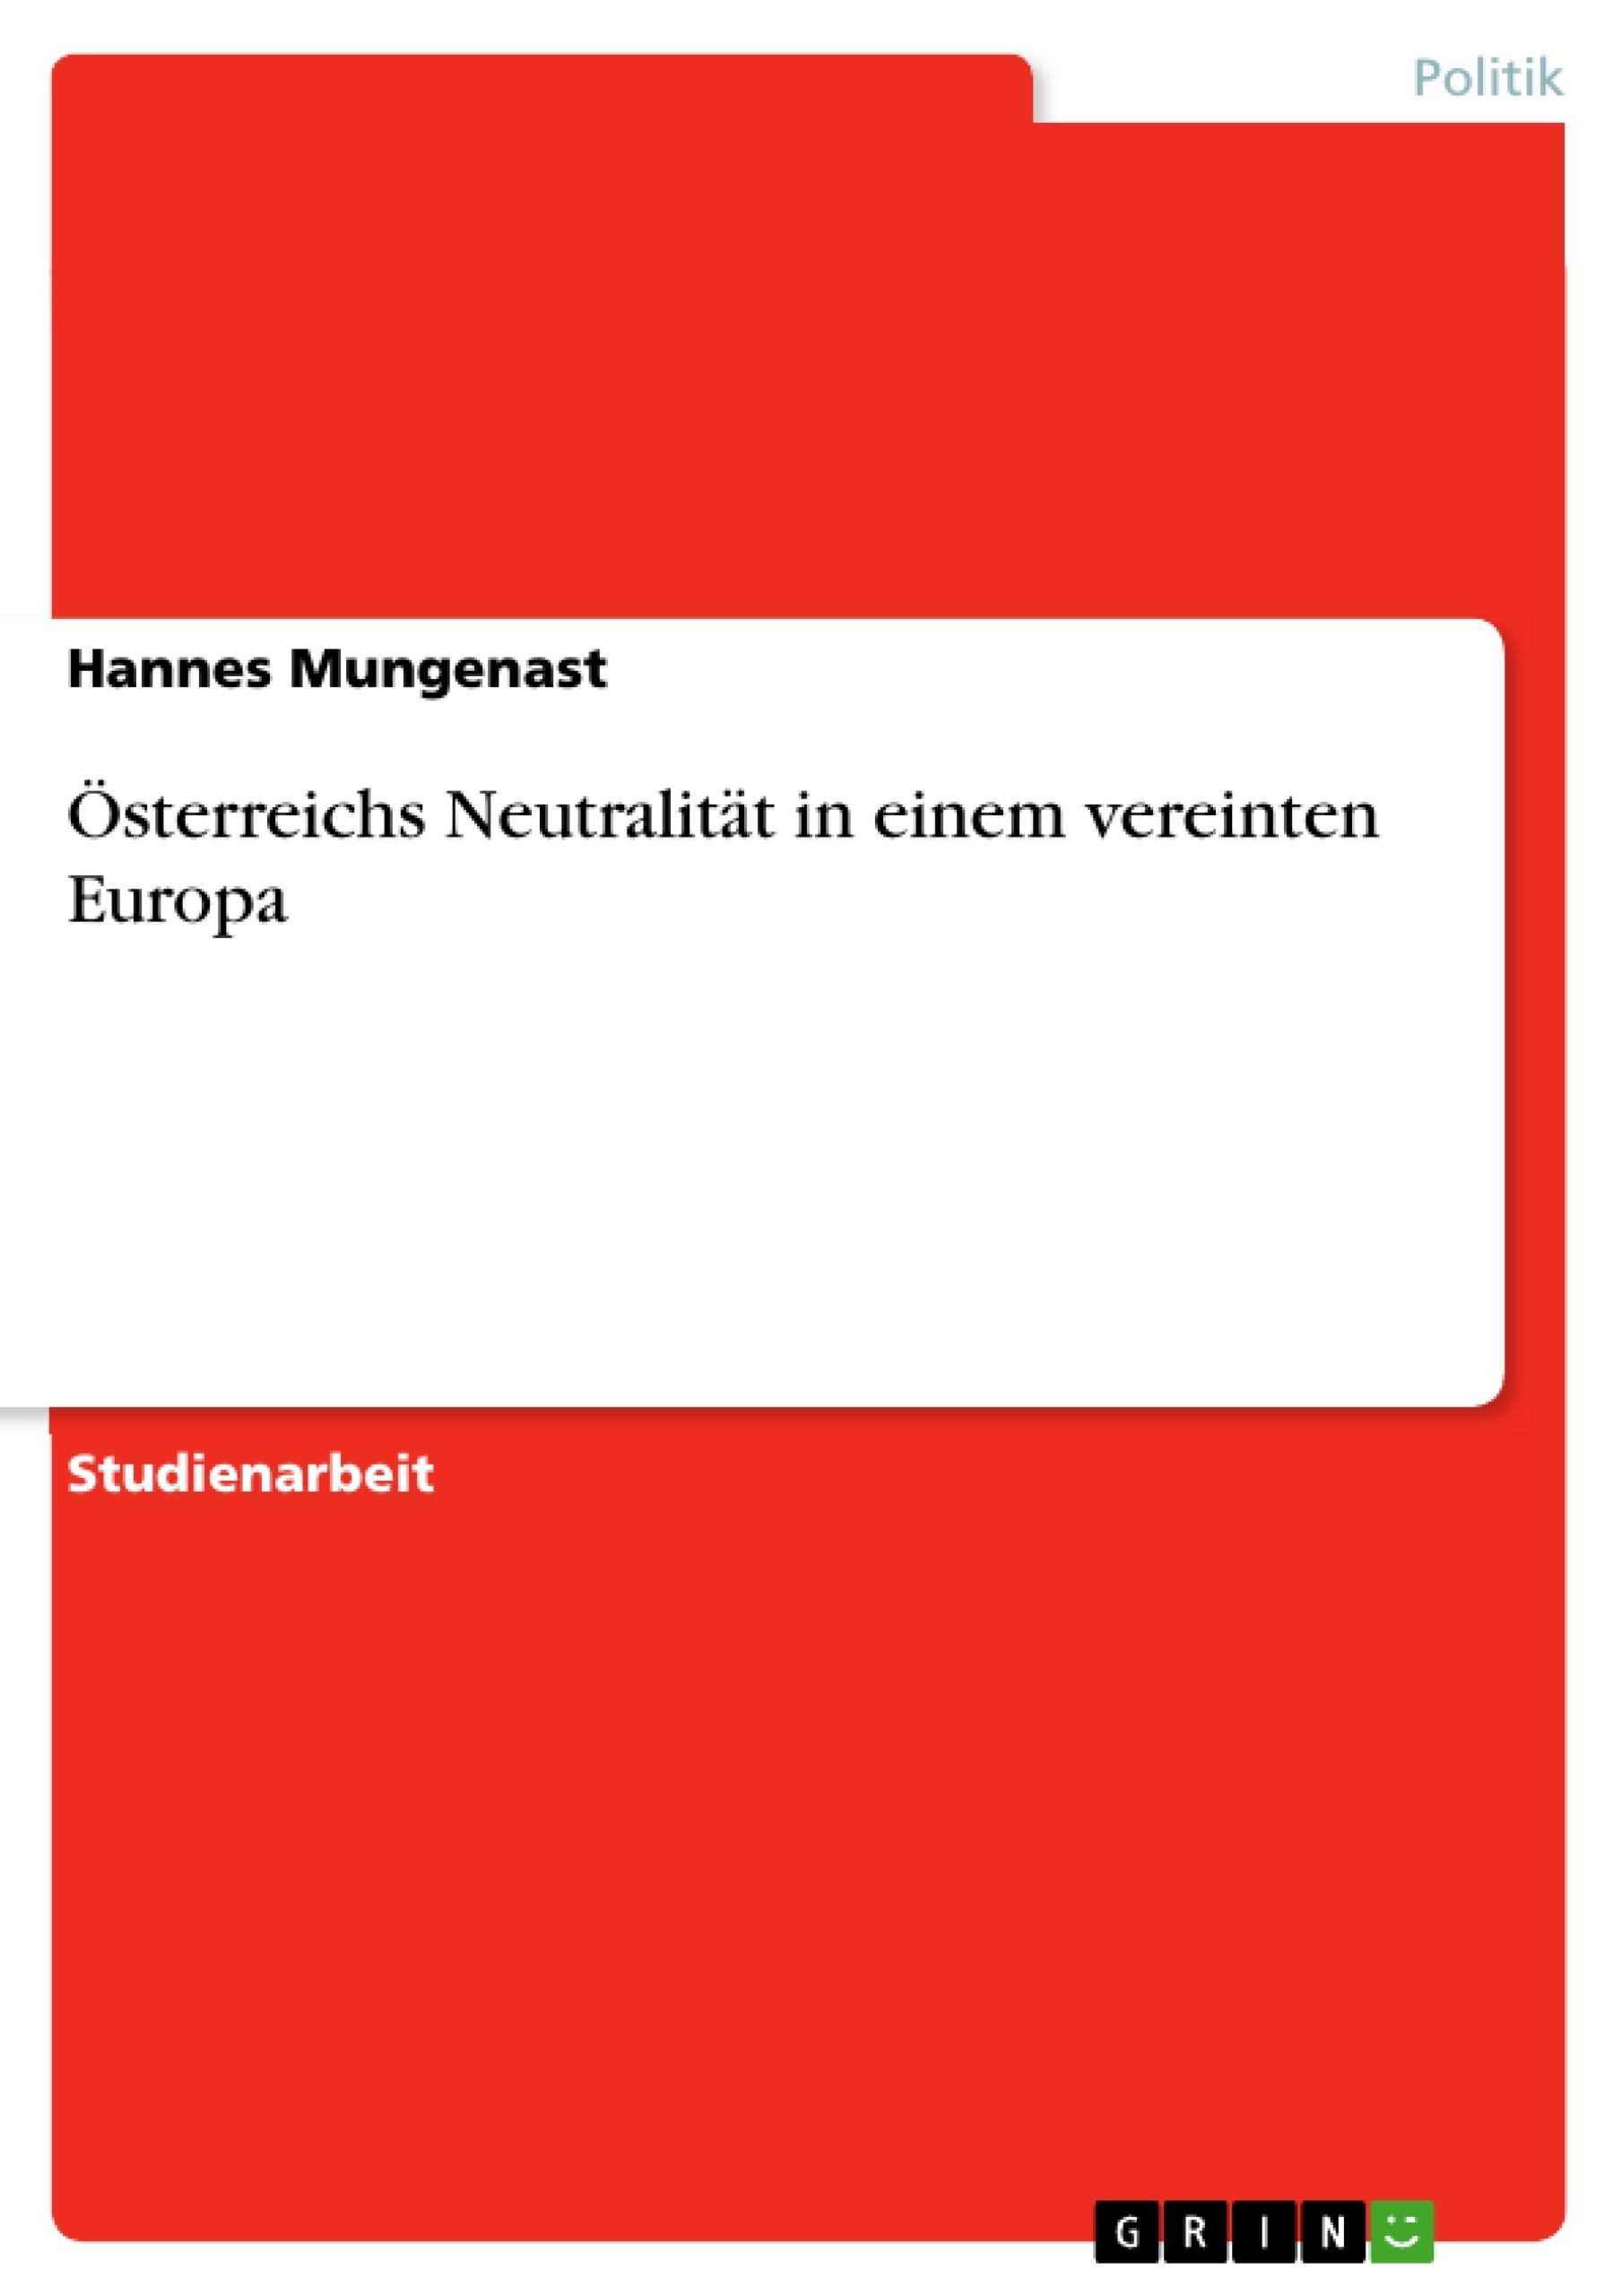 Title: Österreichs Neutralität in einem vereinten Europa